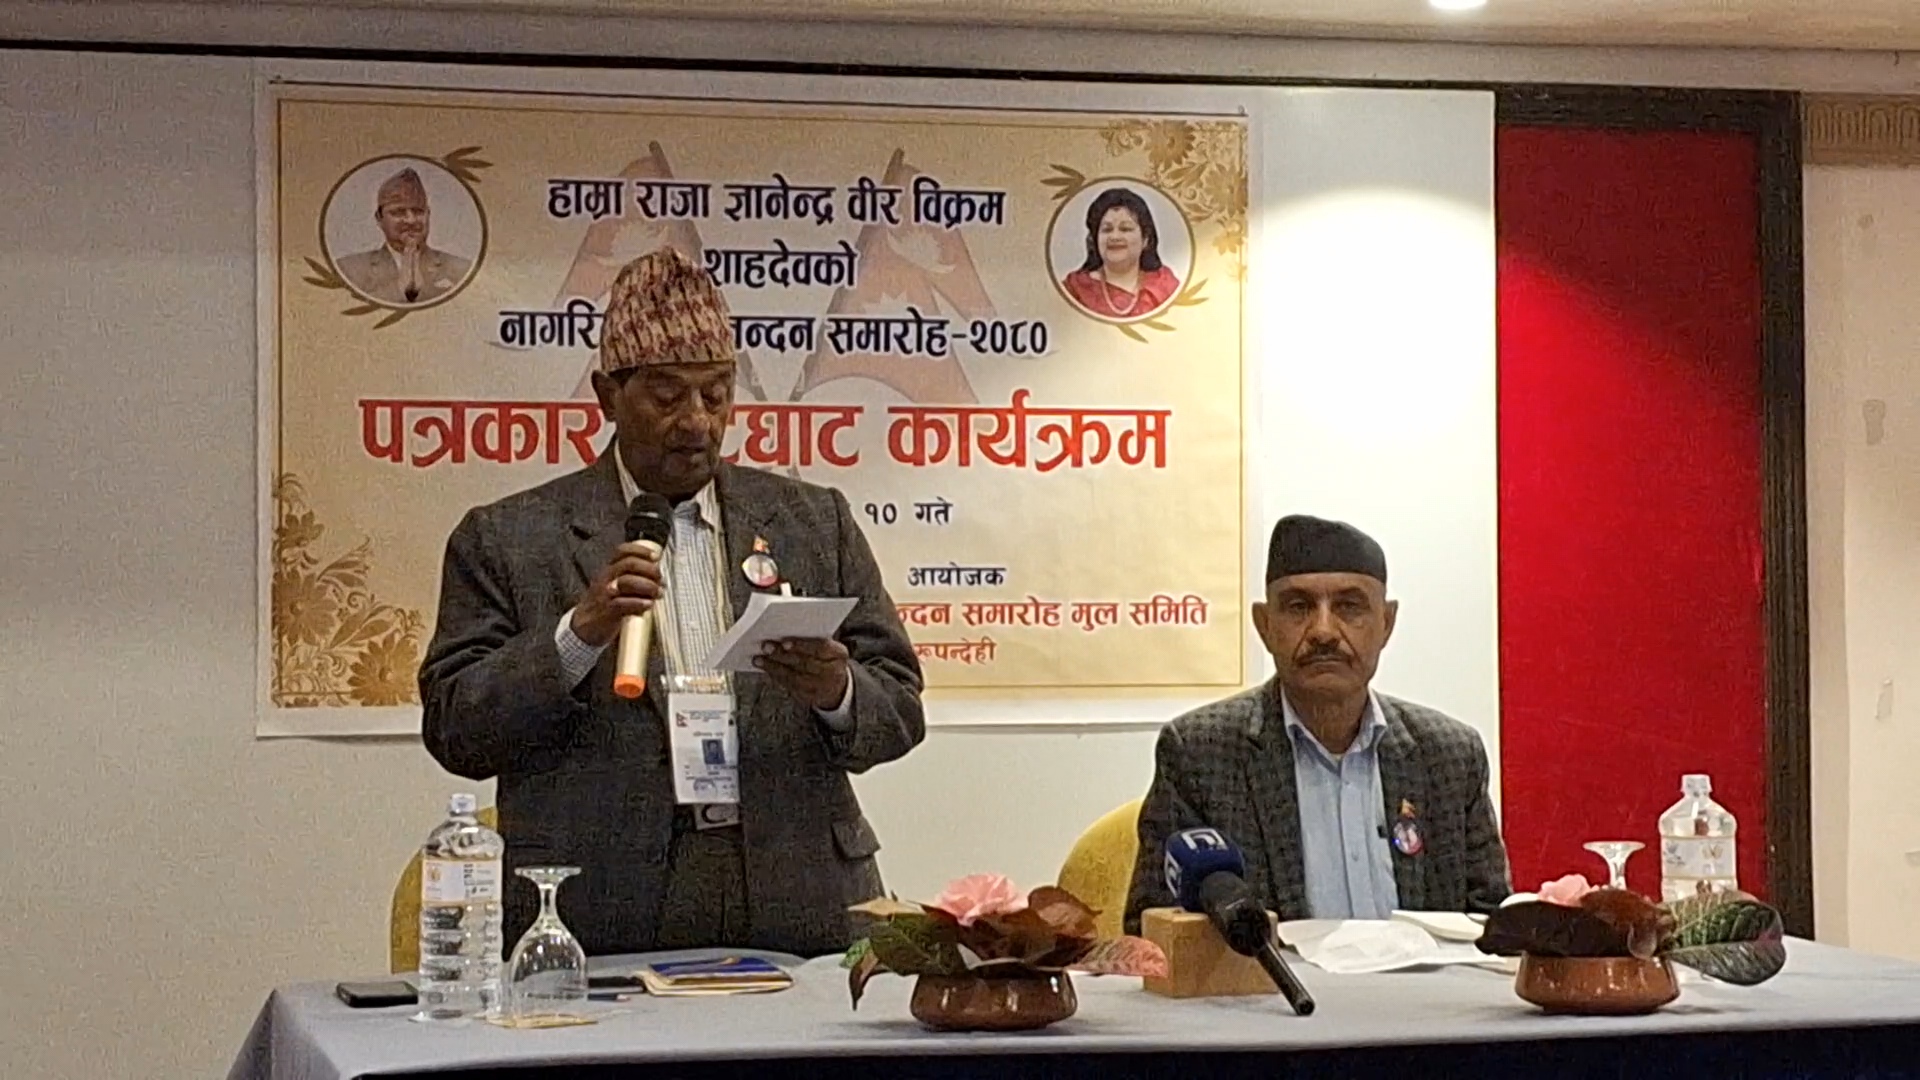 नेपाल हिन्दू राष्ट्र के लिए भारत के सहयोग की आवश्यकता